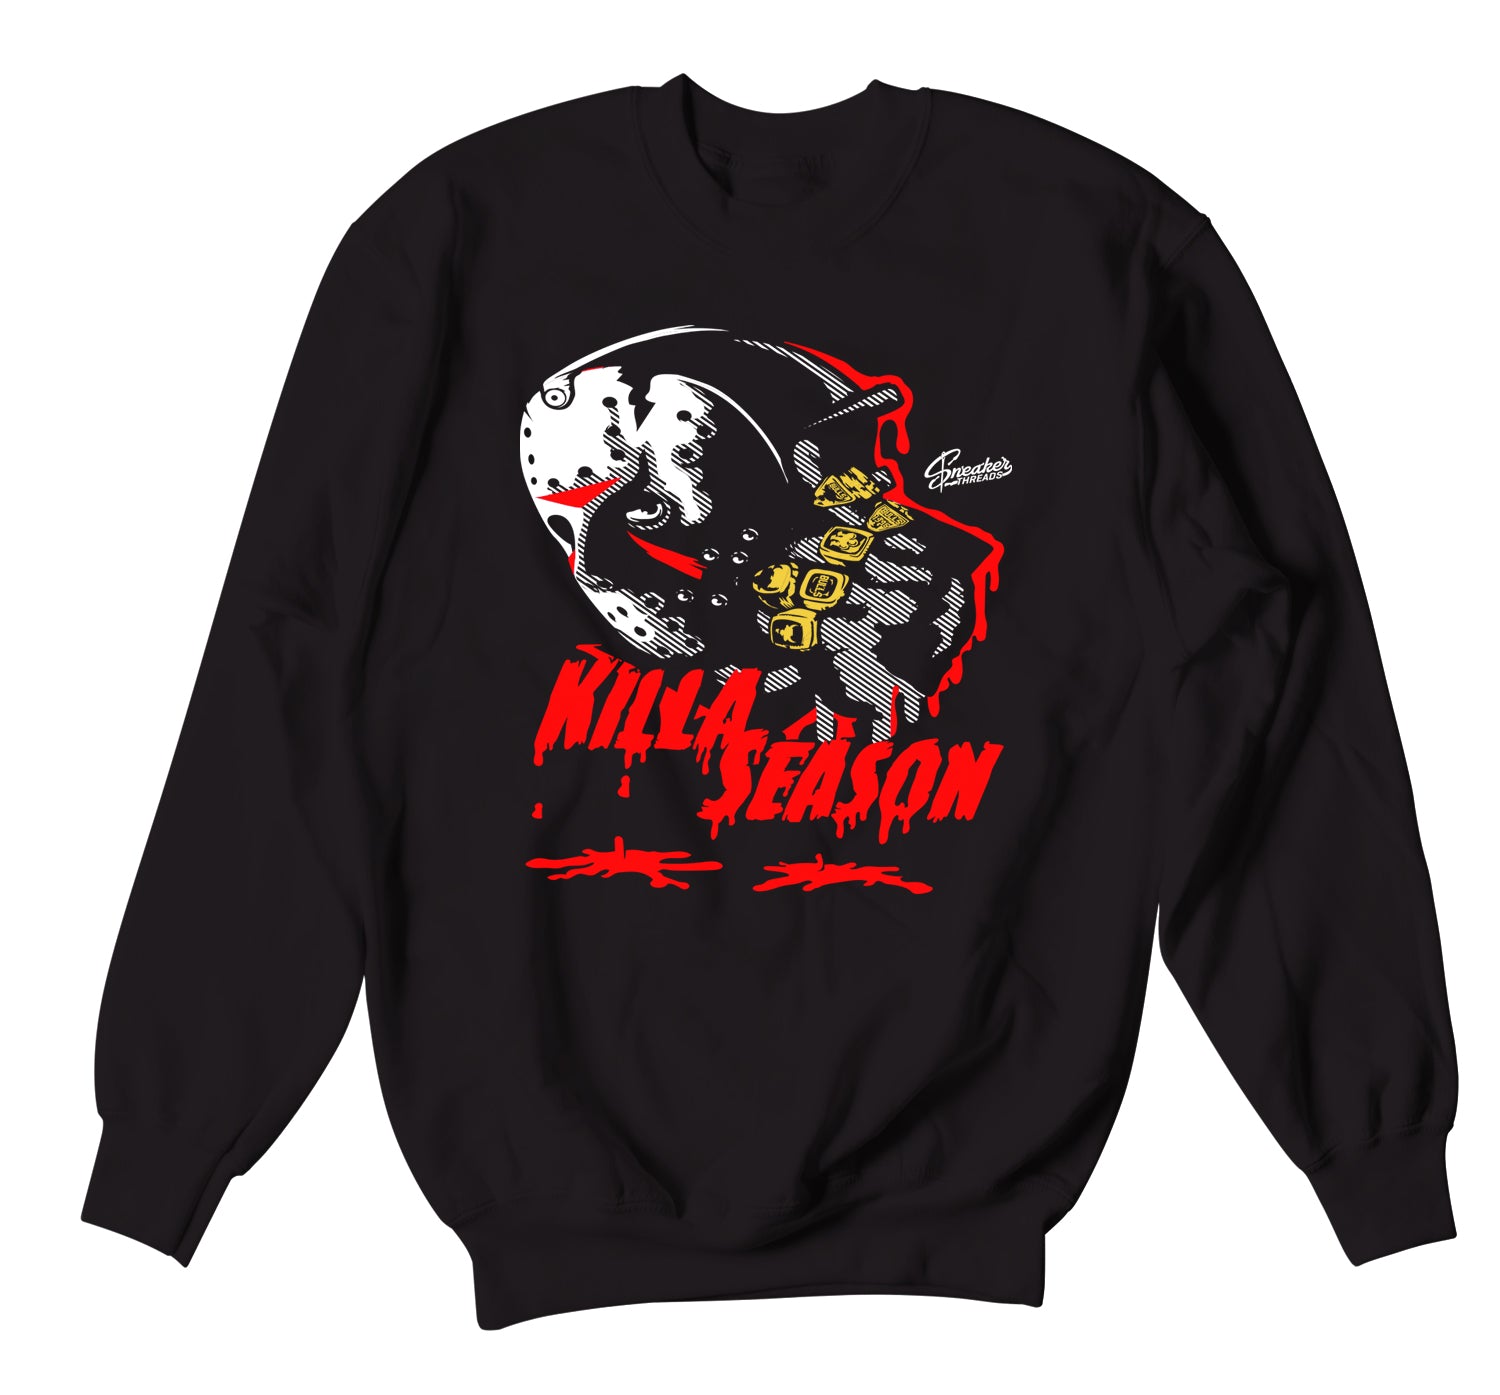 Retro 12 Super Bowl Sweater - Killa Season - Black